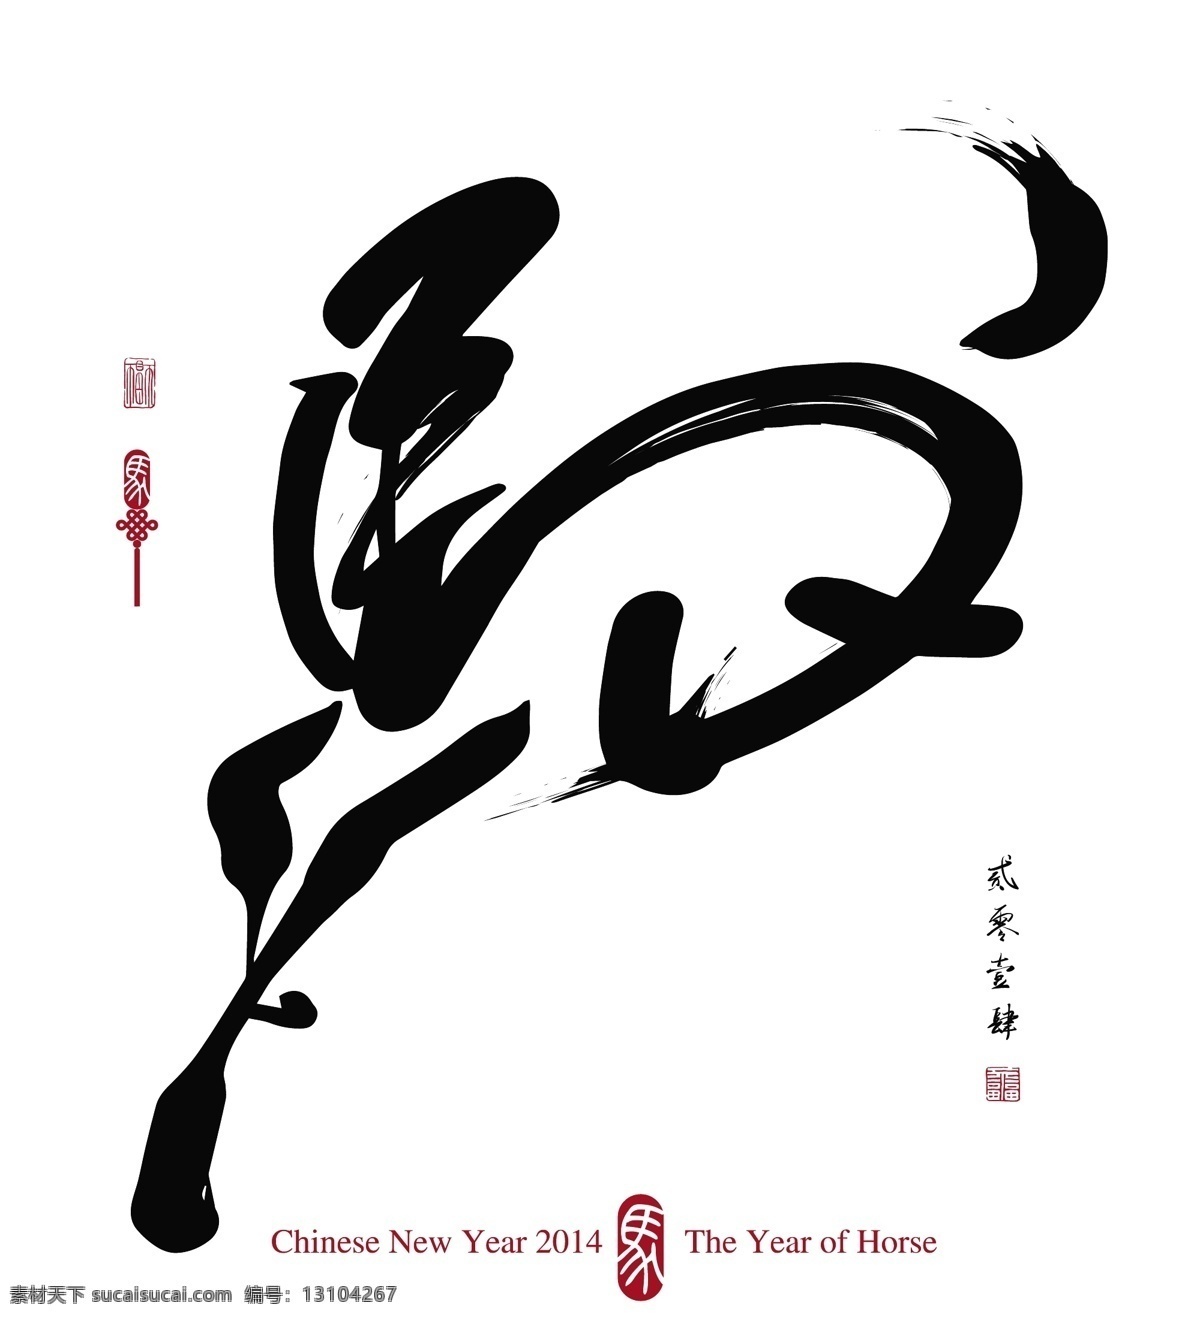 马 字 马年 传统 春节 节日 节日素材 马字 手绘 祝福 矢量 模板下载 马字马年 2015羊年